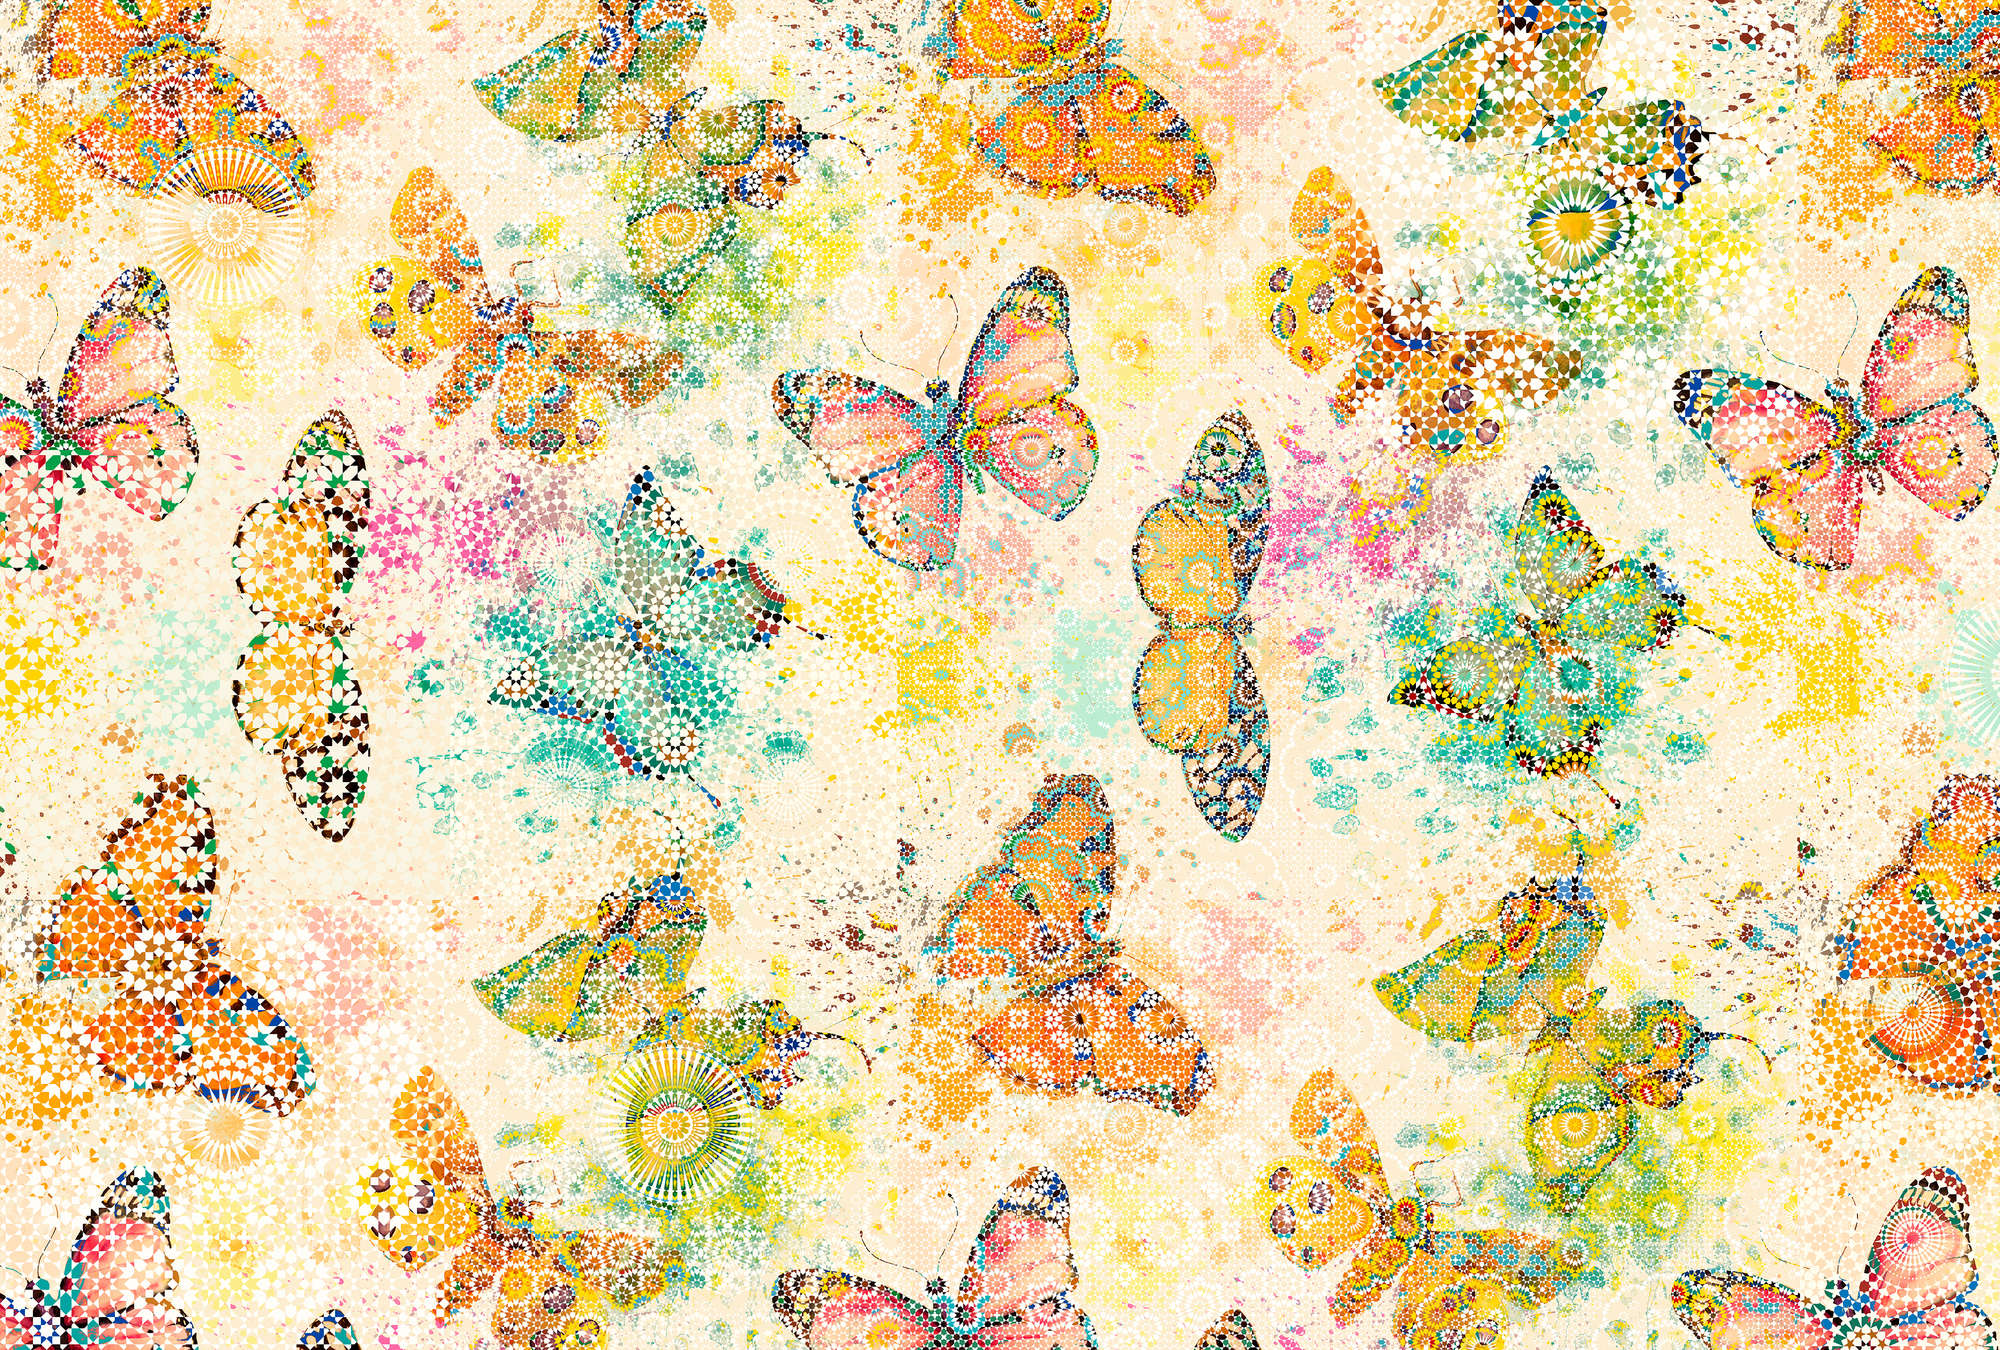             Carta da parati con farfalle in stile mosaico - Crema, arancione
        